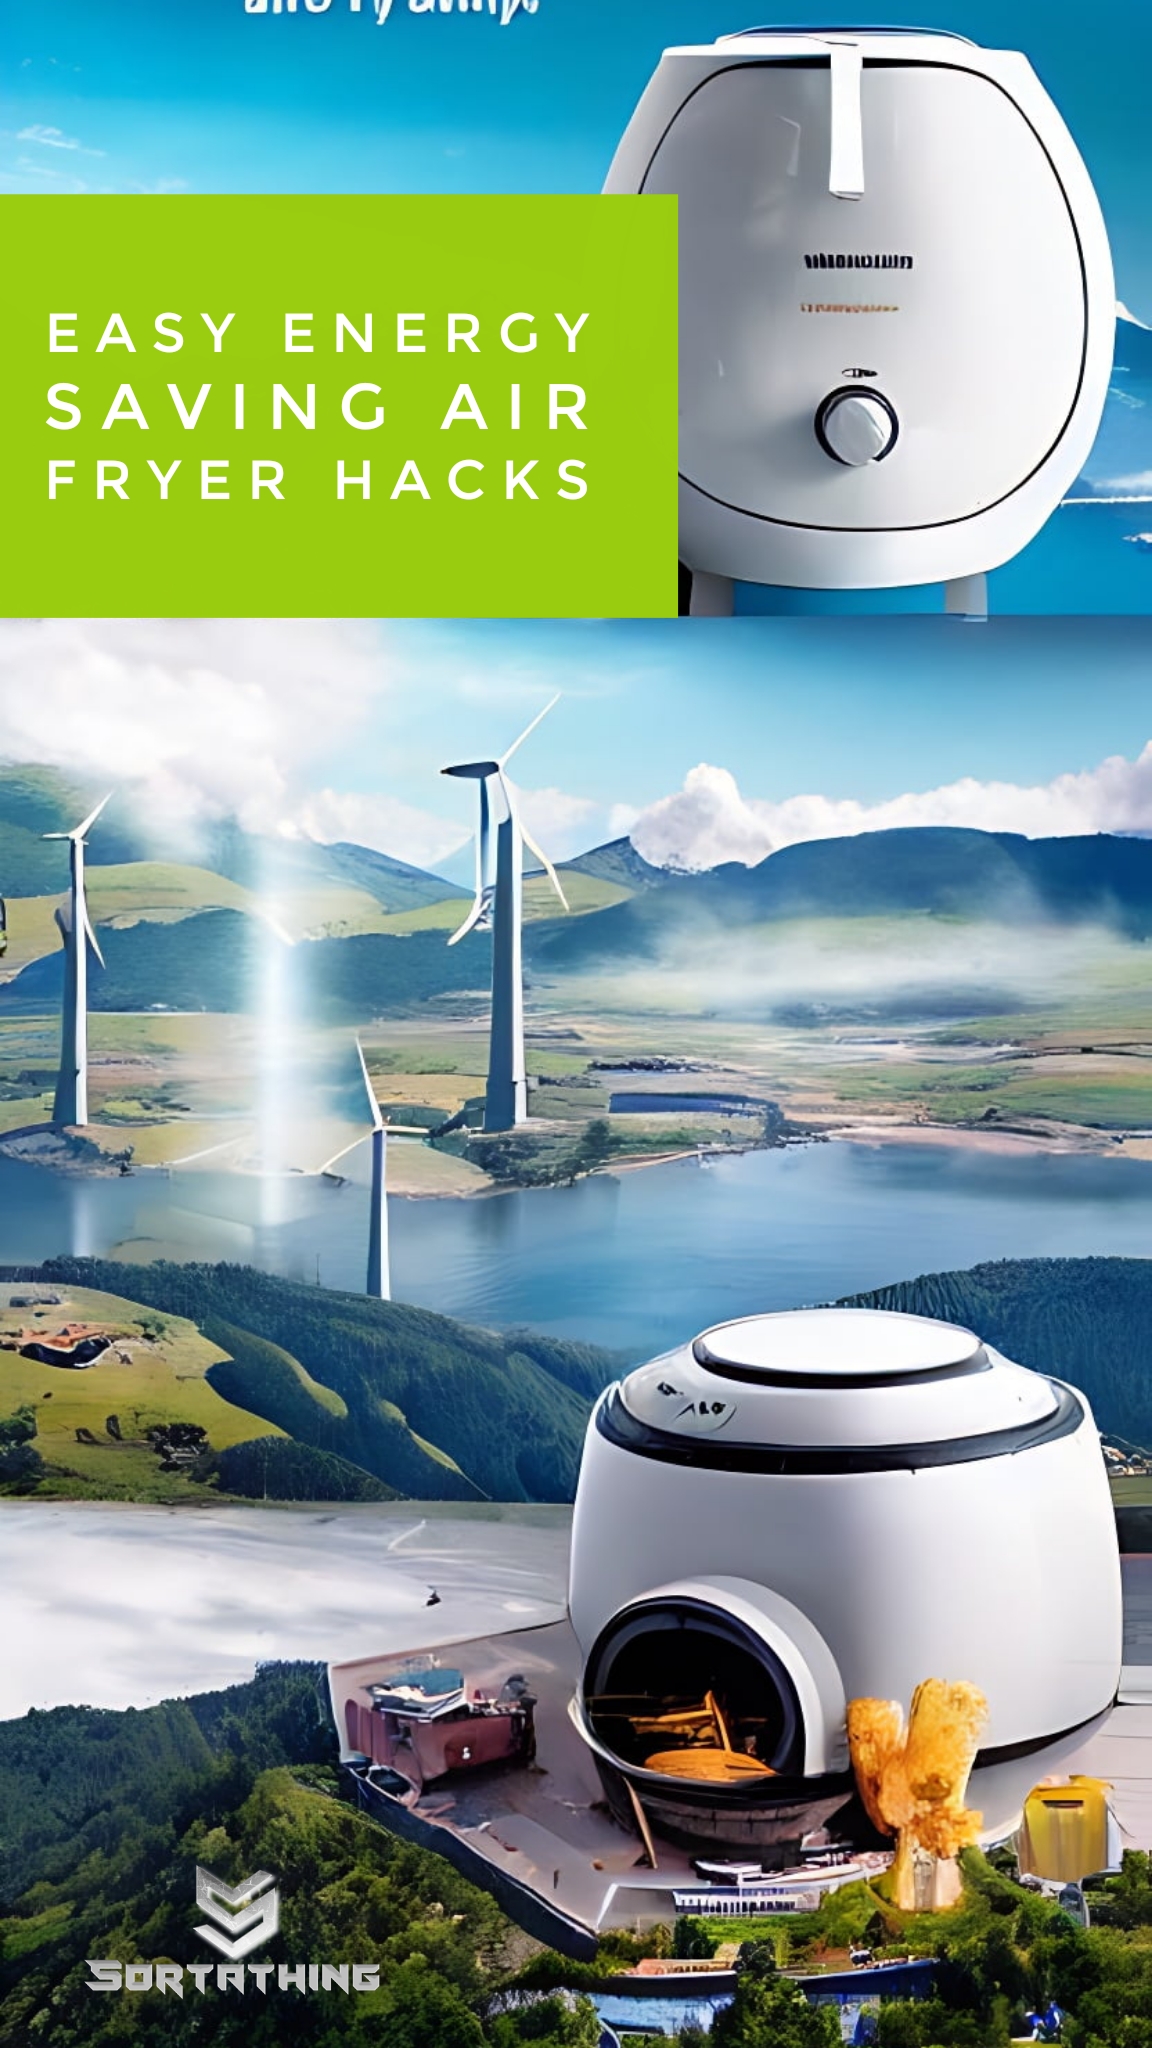 8 Easy Energy Saving Air Fryer Hacks 1 - Sortathing Food & Health